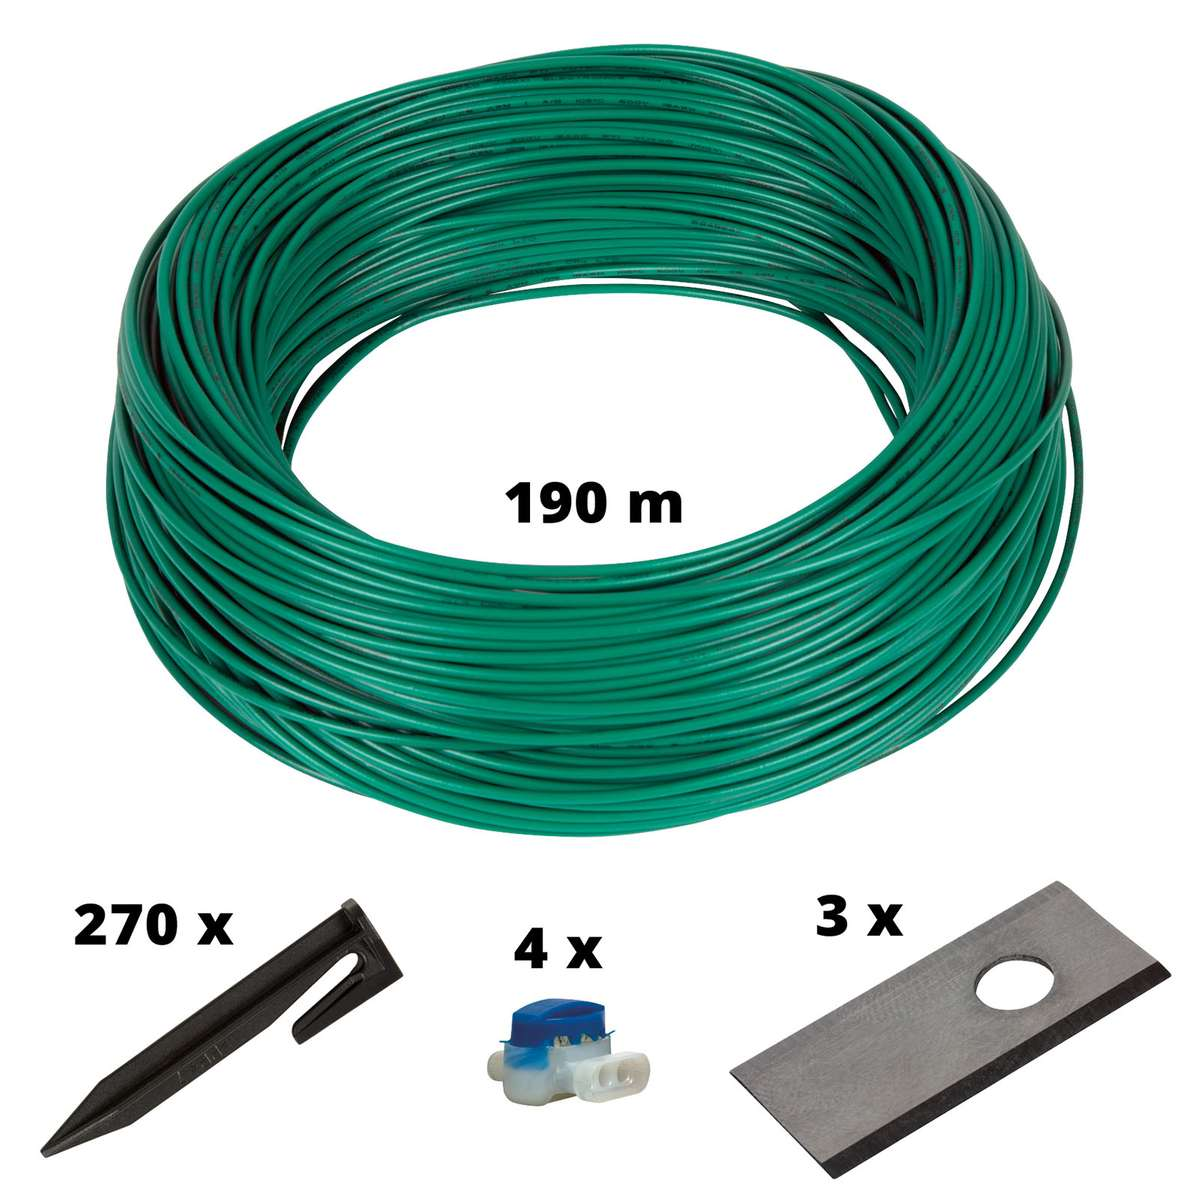 EINHELL Cable Mehrfarbig Kit 900m2 Mähroboter-Zubehör